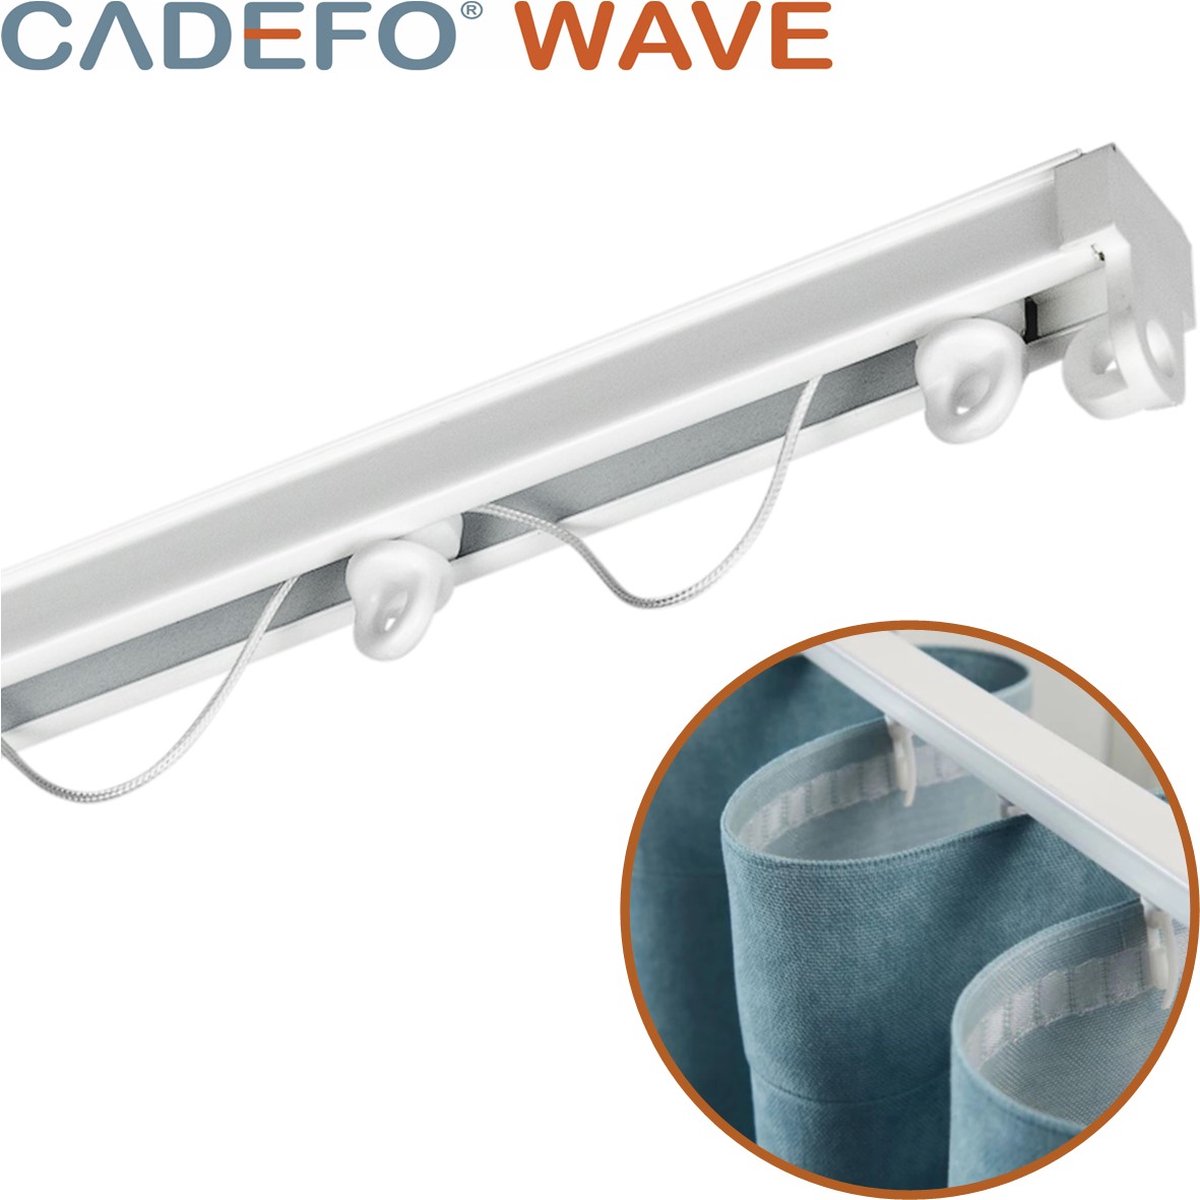 CADEFO WAVE (151 - 200 cm) Gordijnrails - Compleet op maat! - UIT 1 STUK - Leverbaar tot 6 meter - Plafondbevestiging - Lengte 177 cm